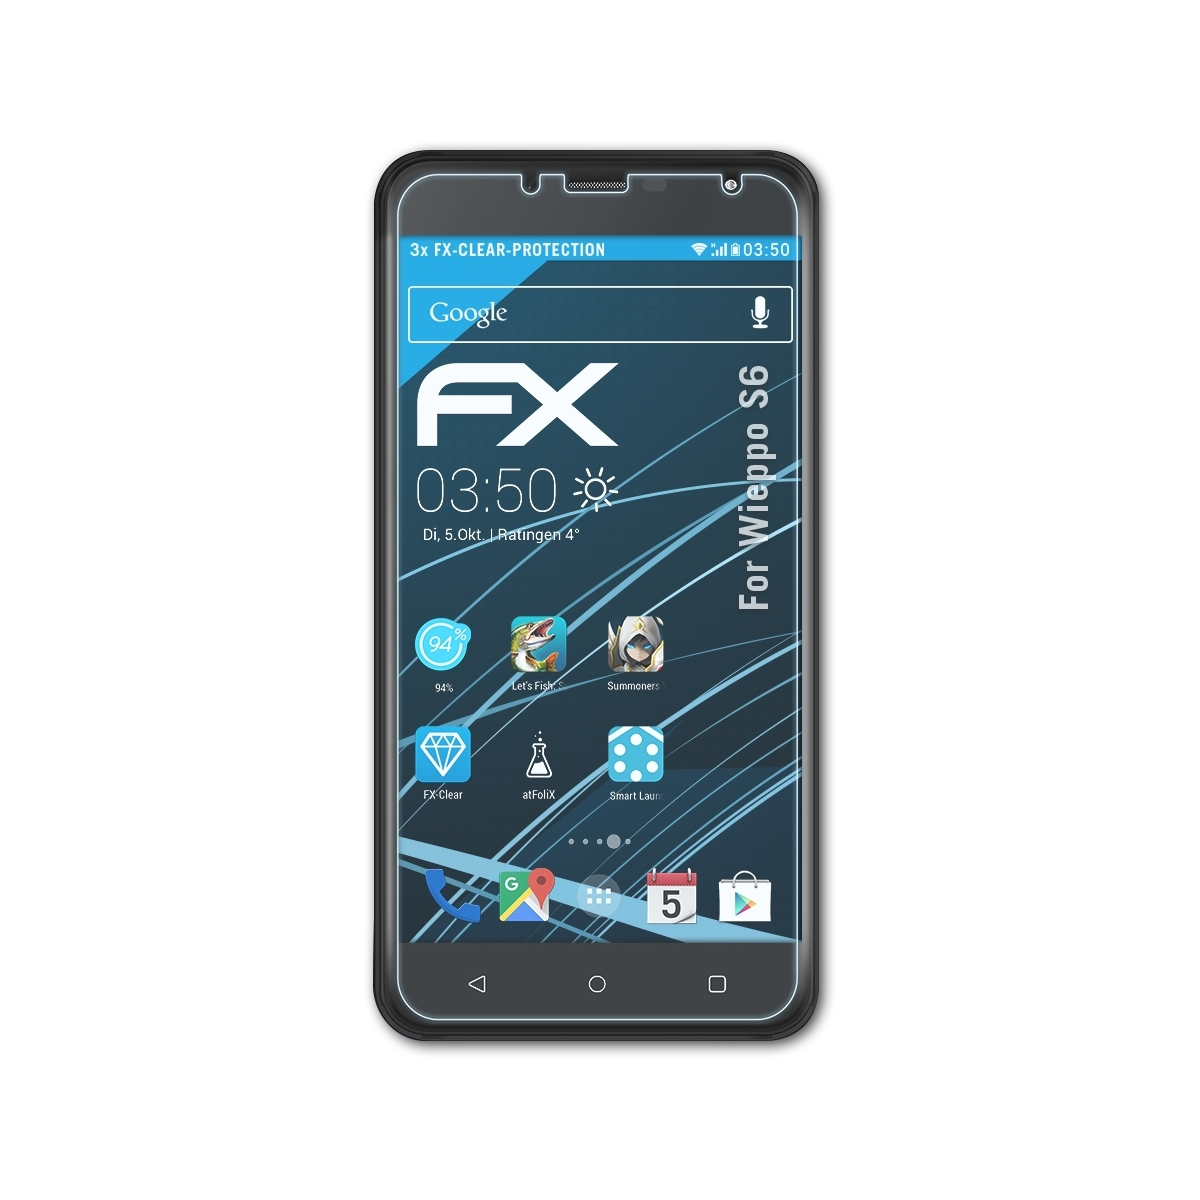 ATFOLIX 3x Wieppo Displayschutz(für S6) FX-Clear